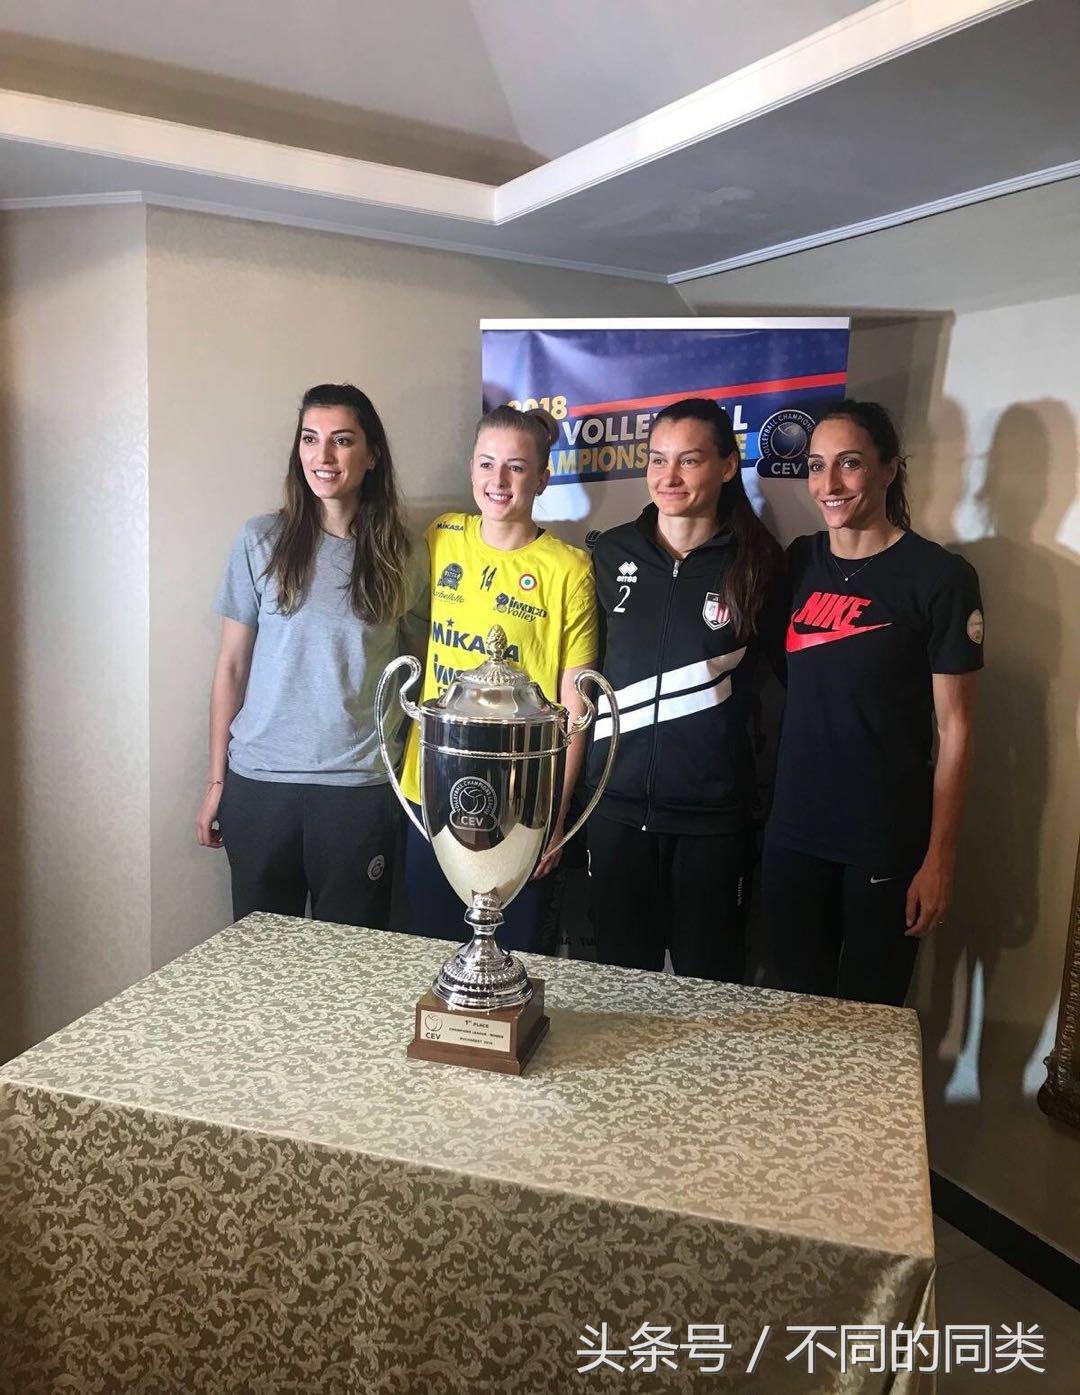 2017 2018女排欧冠联赛 2018女排欧冠